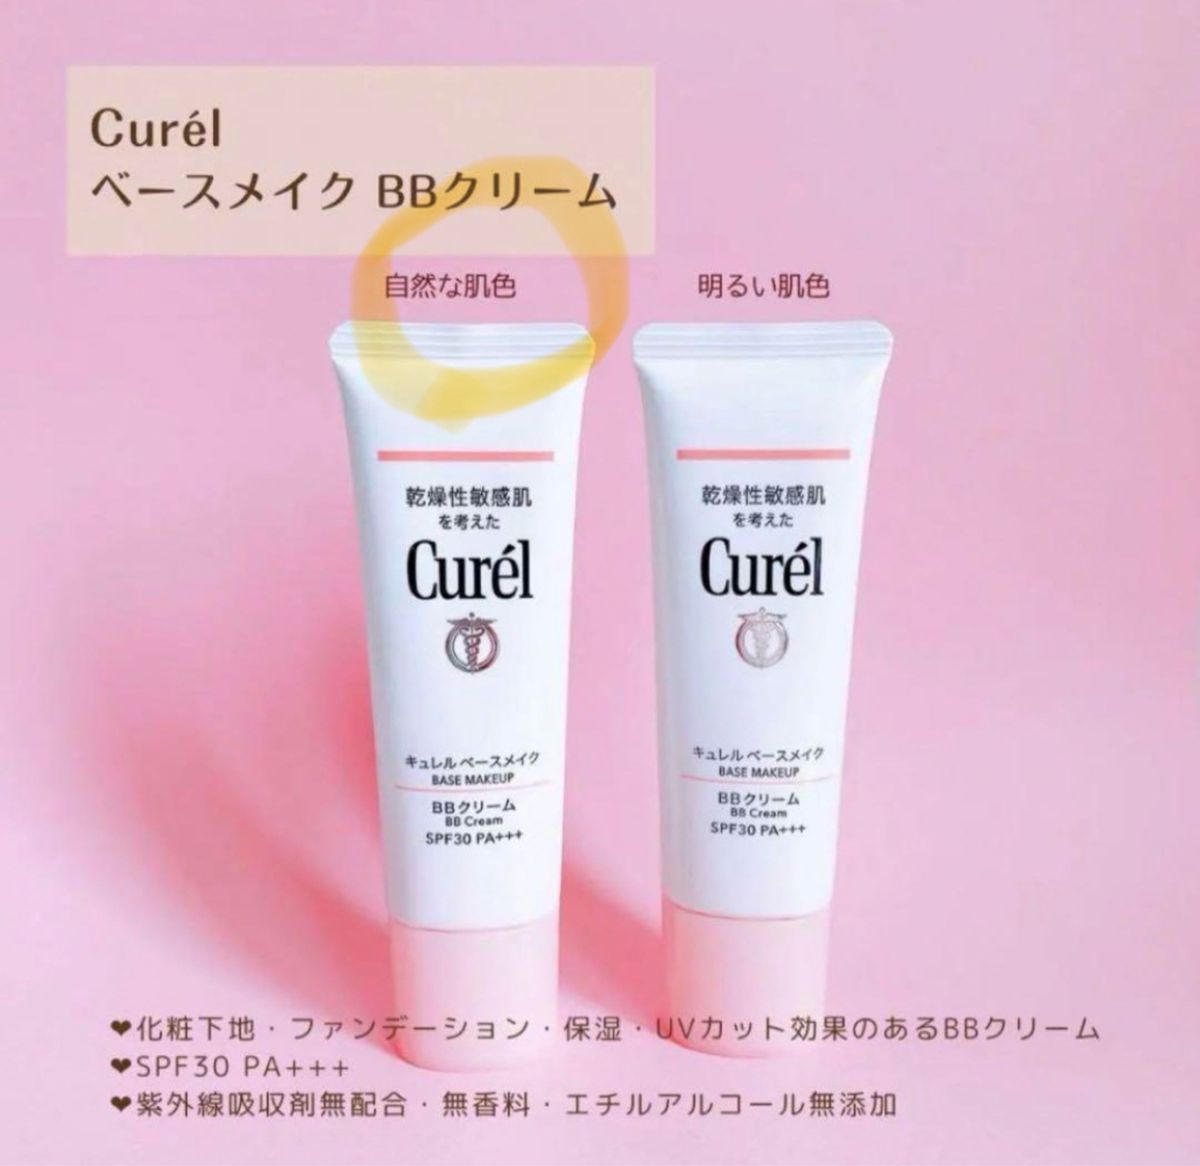 【新品同様】花王 Curel キュレル BBクリーム 自然な肌色 35g